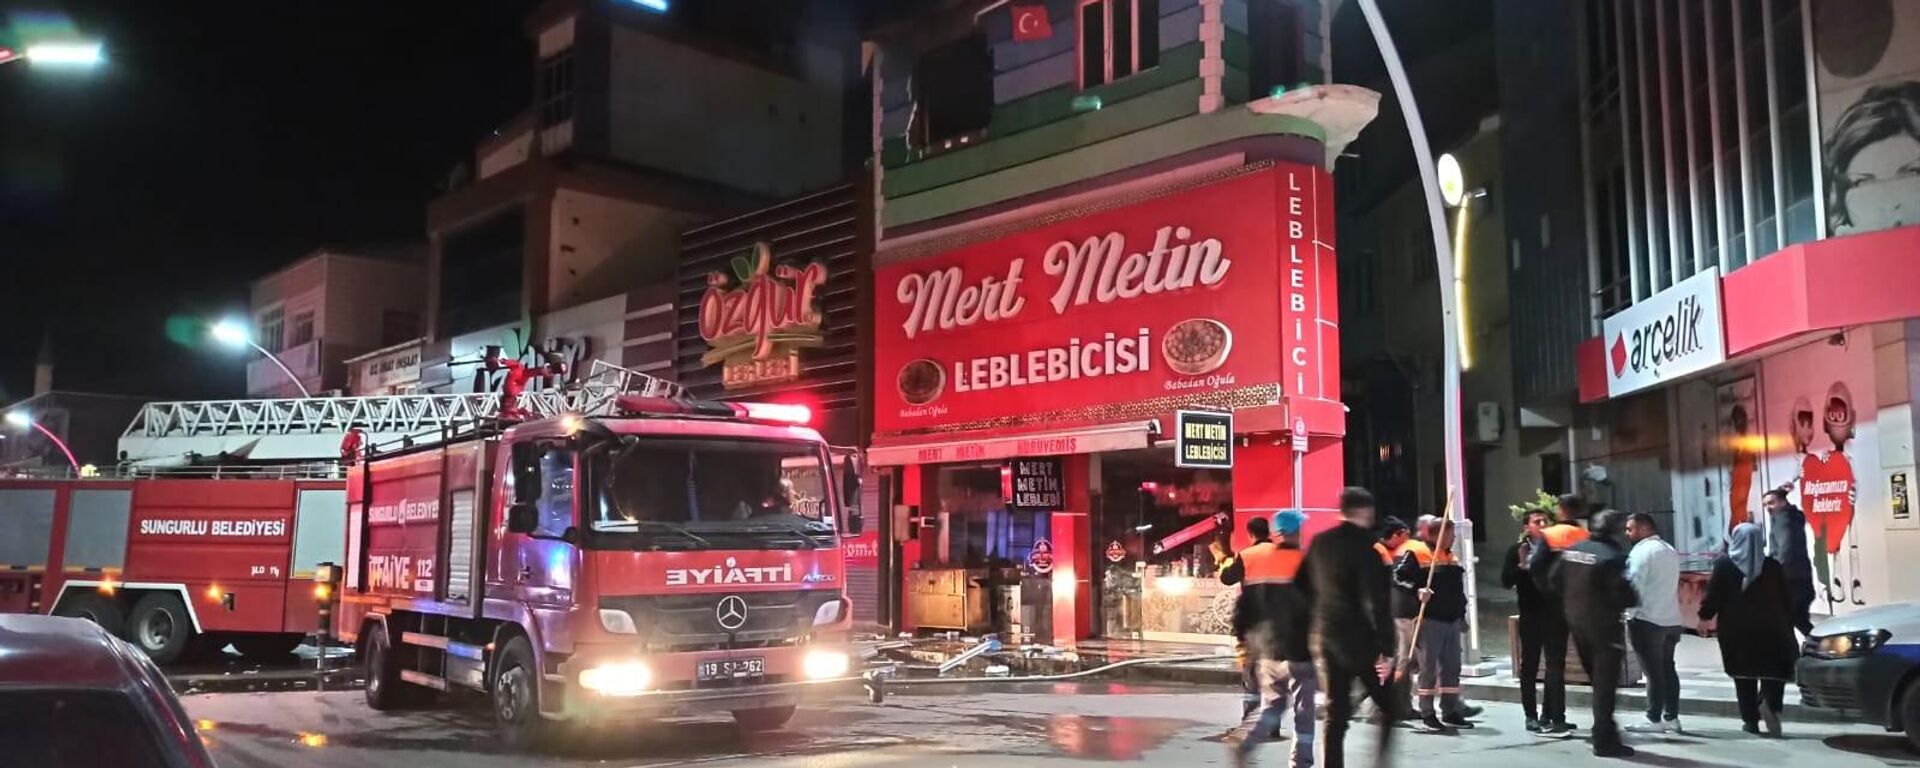 Çorum'un Sungurlu ilçesinde leblebi dükkanında meydana gelen patlamada 5 kişi yaralandı. - Sputnik Türkiye, 1920, 22.05.2022